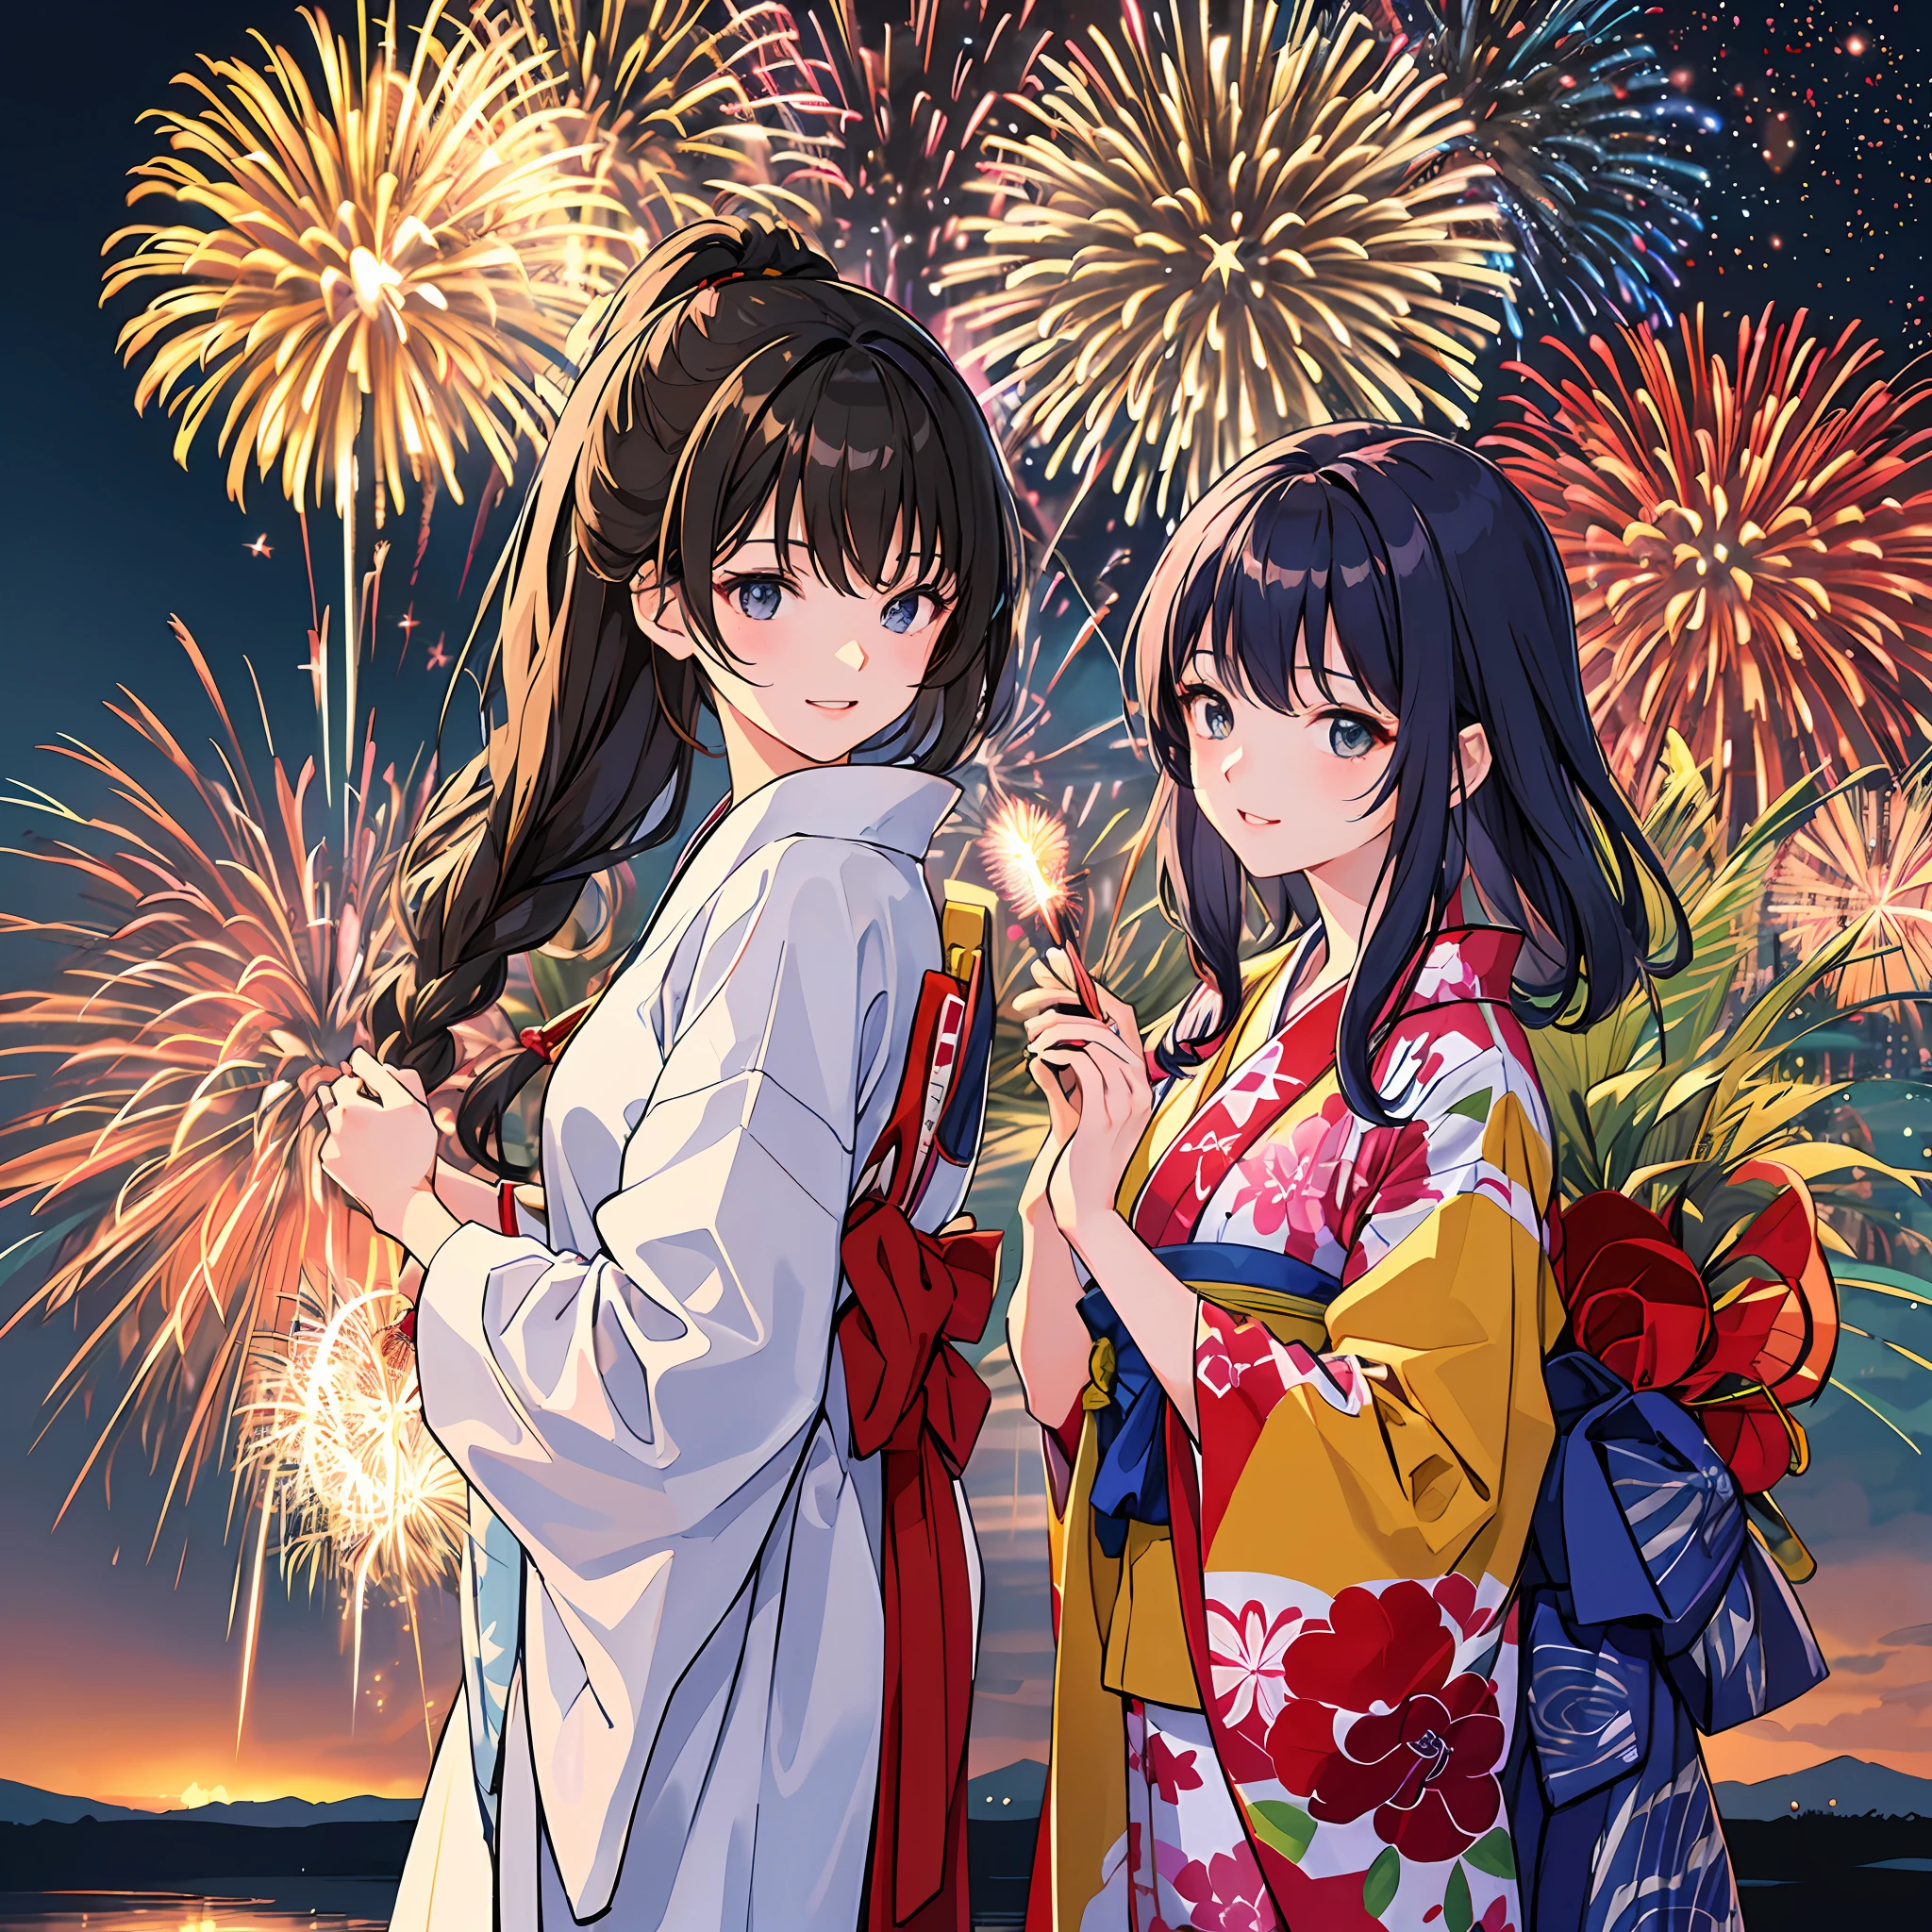 Es gibt zwei Frauen in Yukata-Roben, Sehen Sie sich ein spektakuläres Feuerwerk an. Feuerwerke sind riesig und、Symbolisiert die Sommernächte der traditionellen Feste Japans. (((Frau beeindruckt beim Betrachten des Feuerwerks))). (Die Illustrationen sind von hoher Qualität).((Transparenter Overall)),Feuerwerk ist toll.